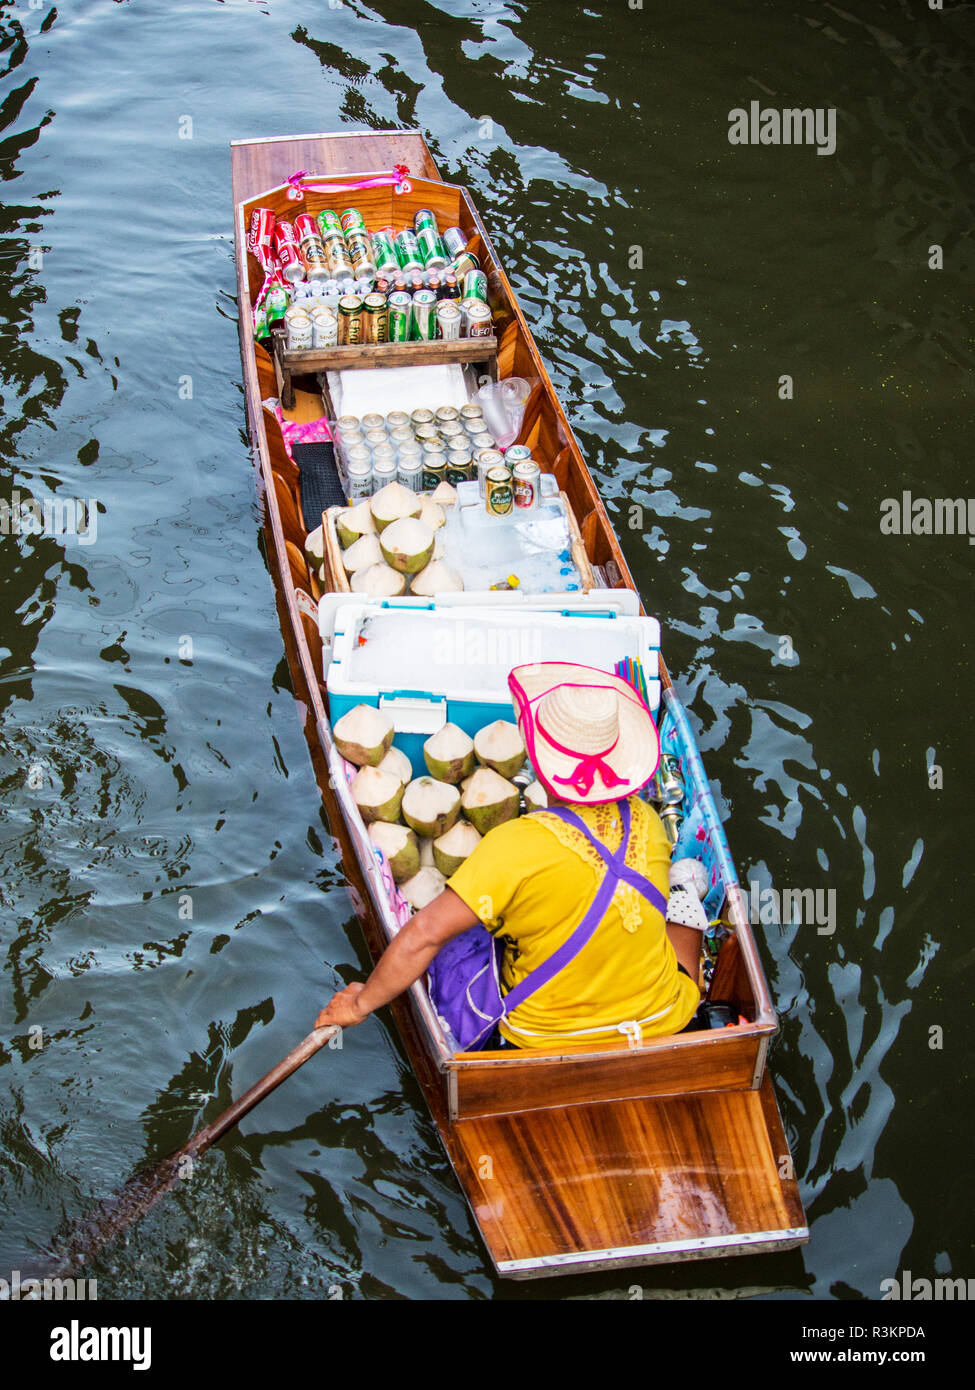 La Thaïlande, Damnoen, Marché flottant de Damnoen Saduak avec vendeur Banque D'Images